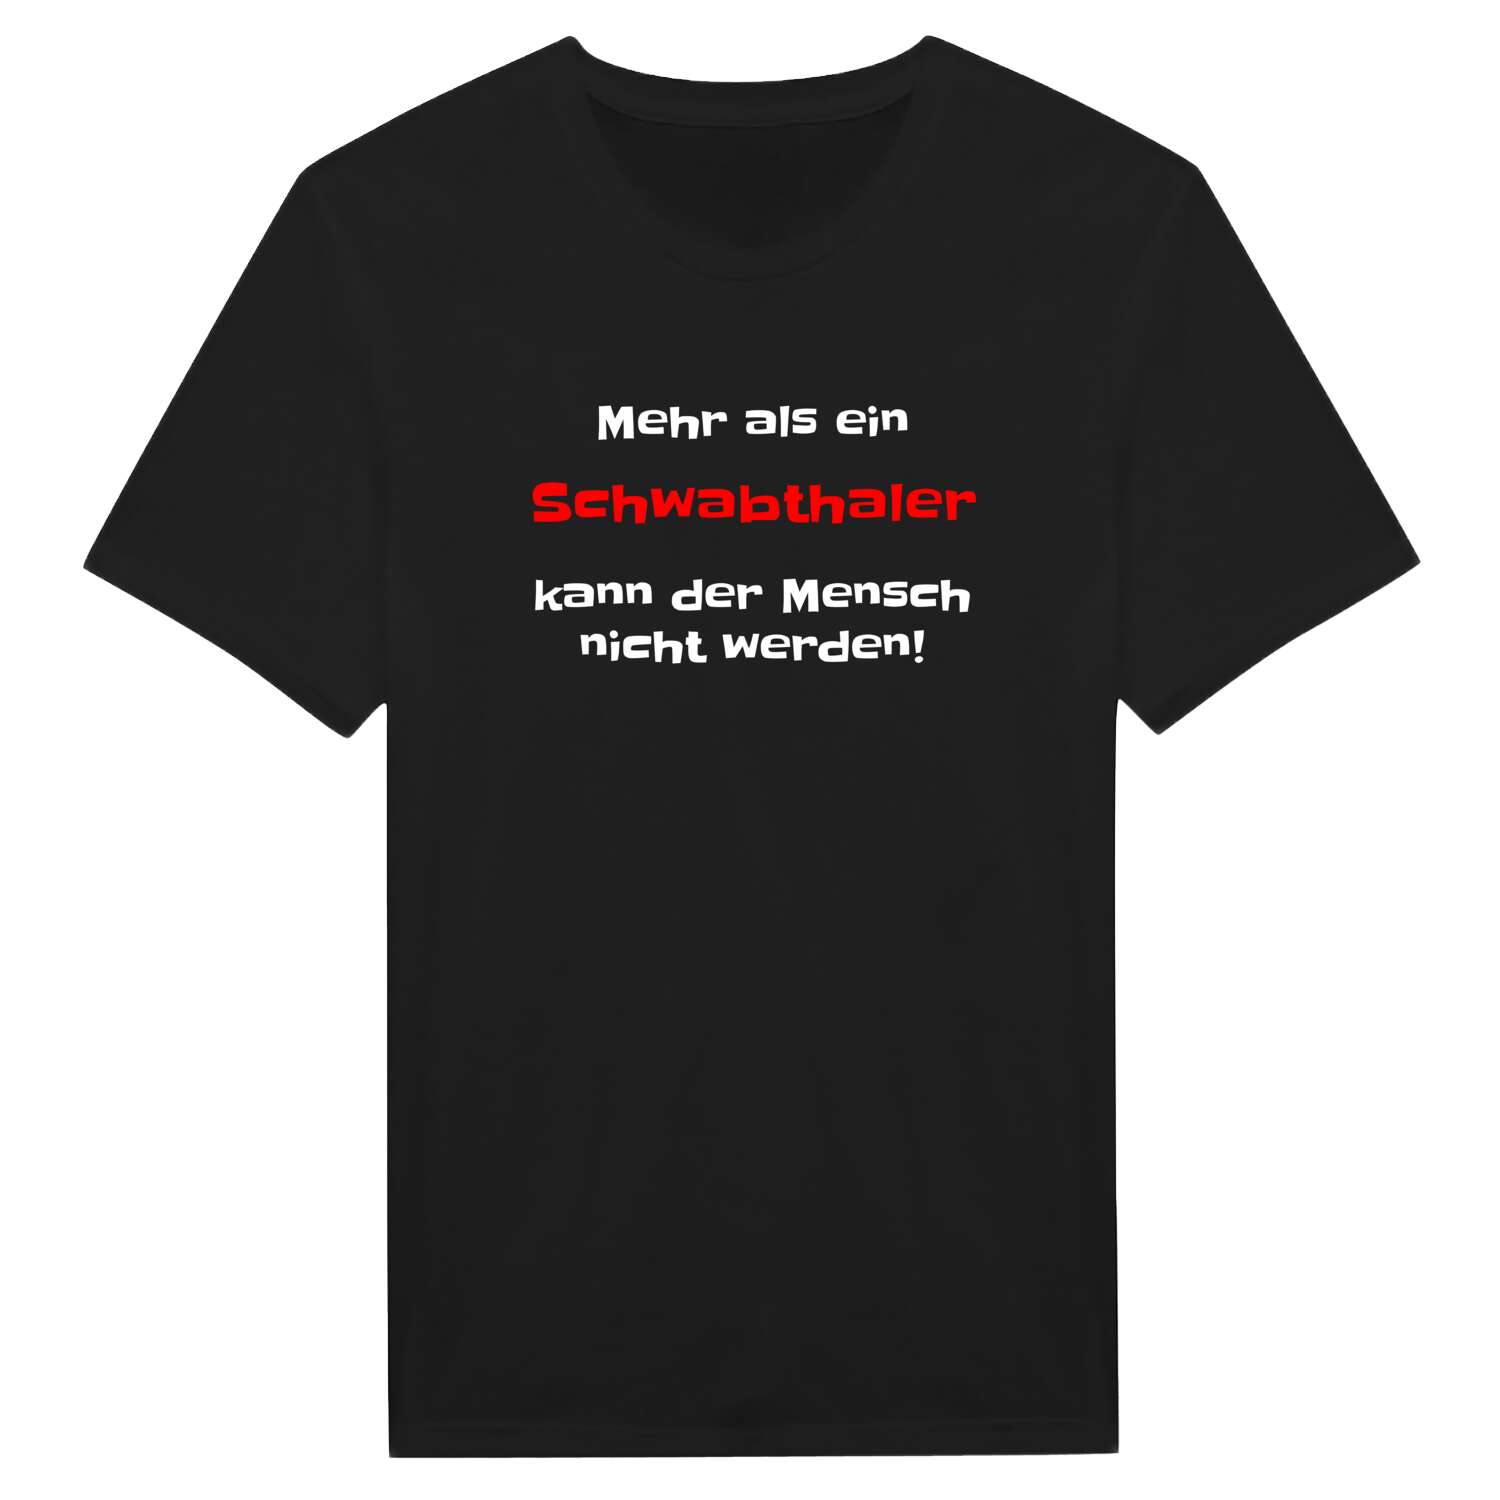 Schwabthal T-Shirt »Mehr als ein«